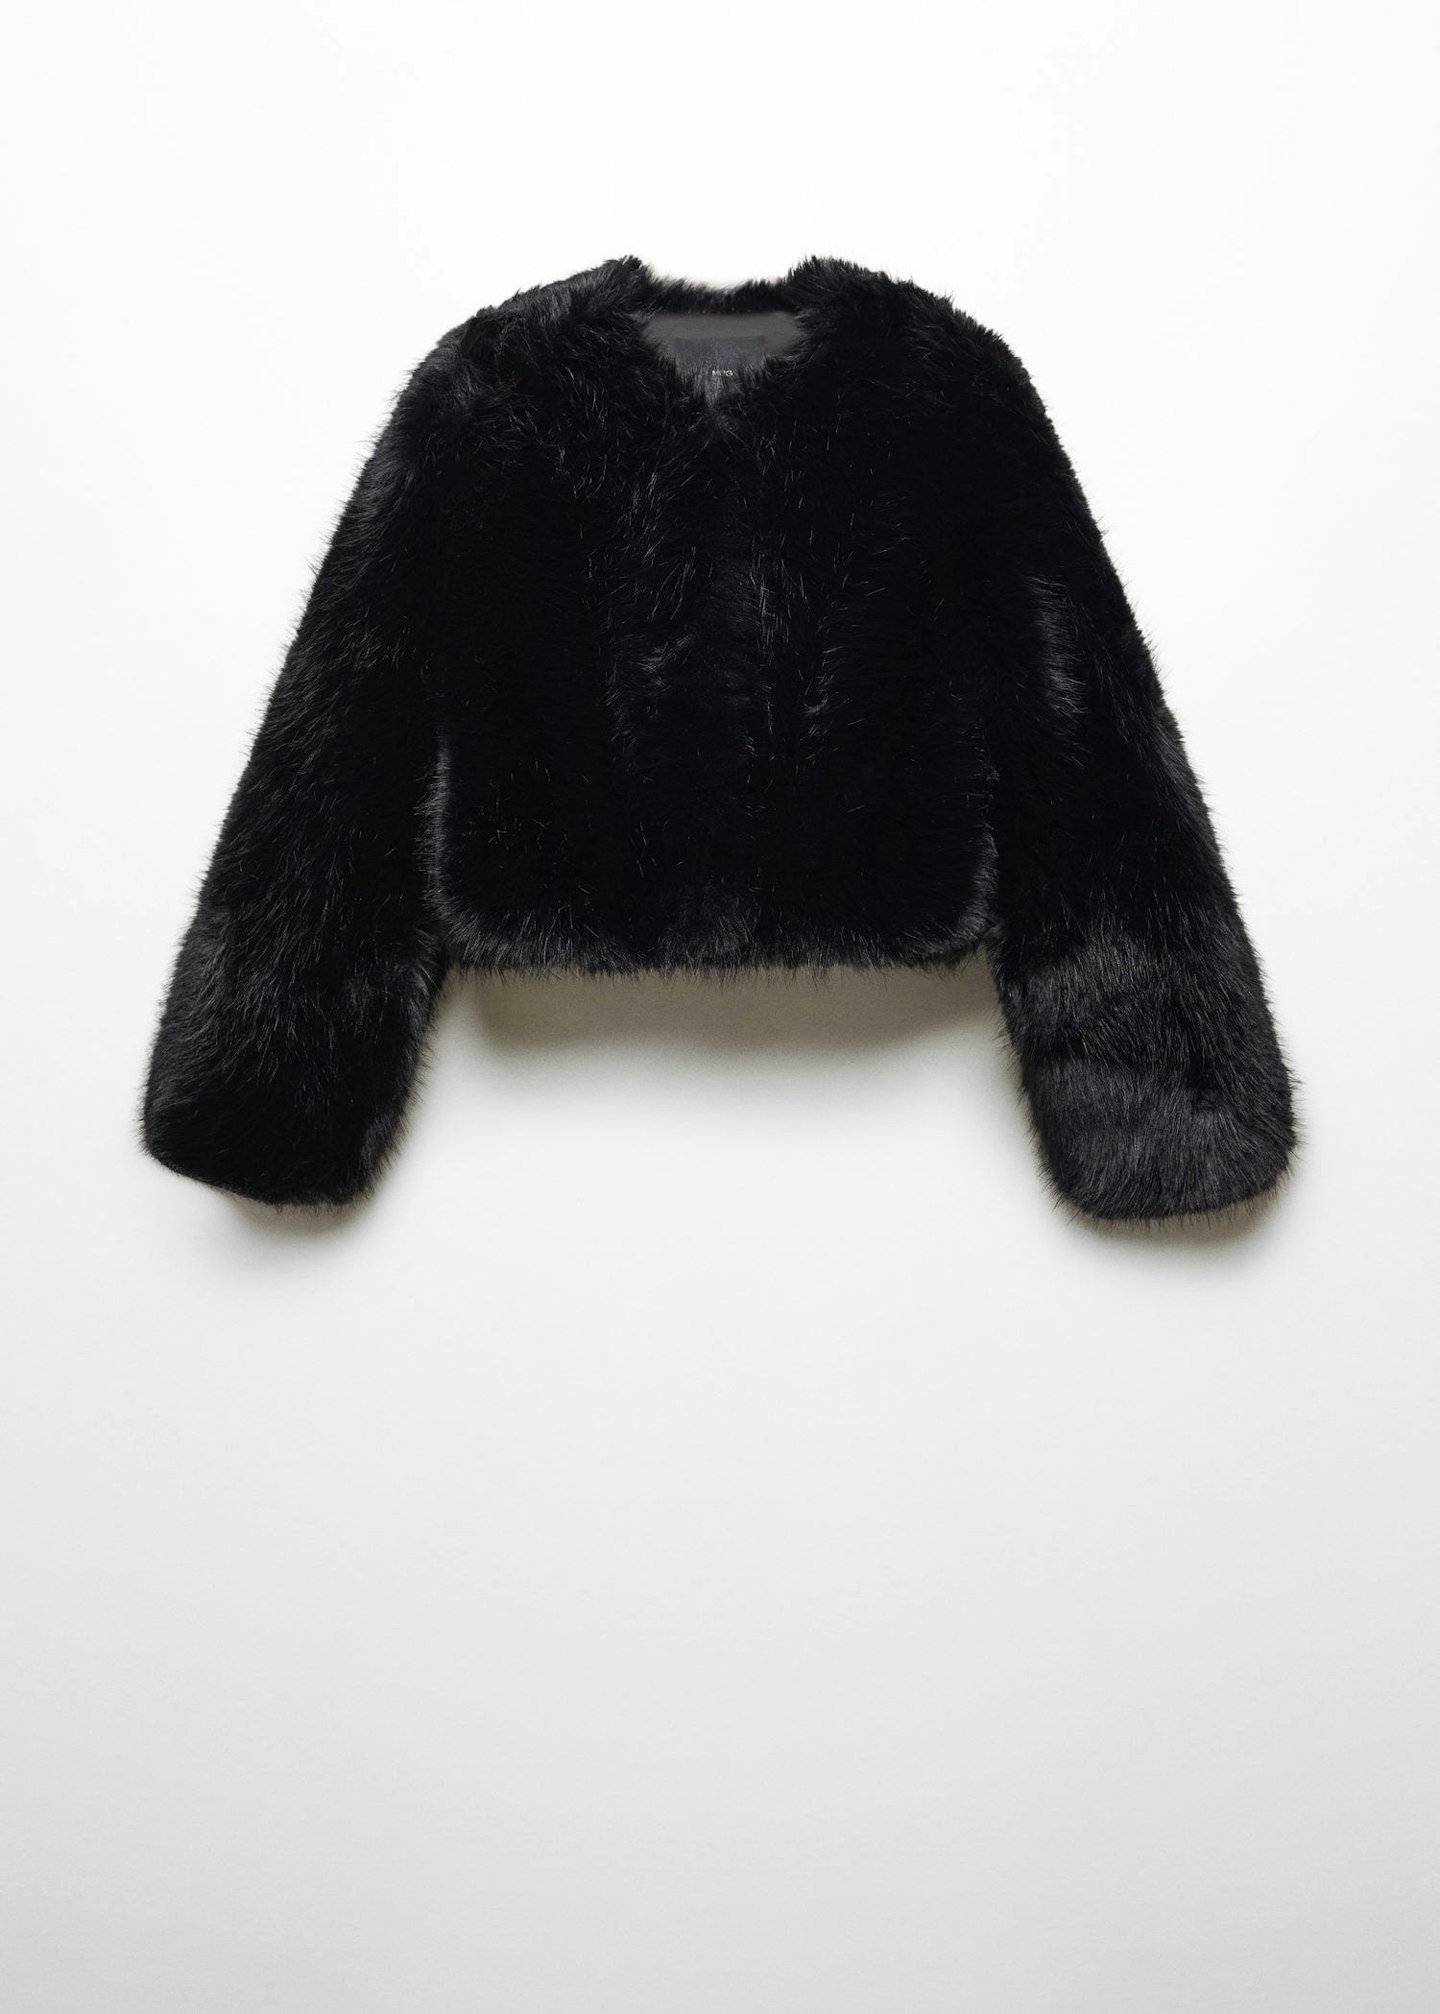 The Frankie Shop Fallon Short Faux Fur Coat - Black